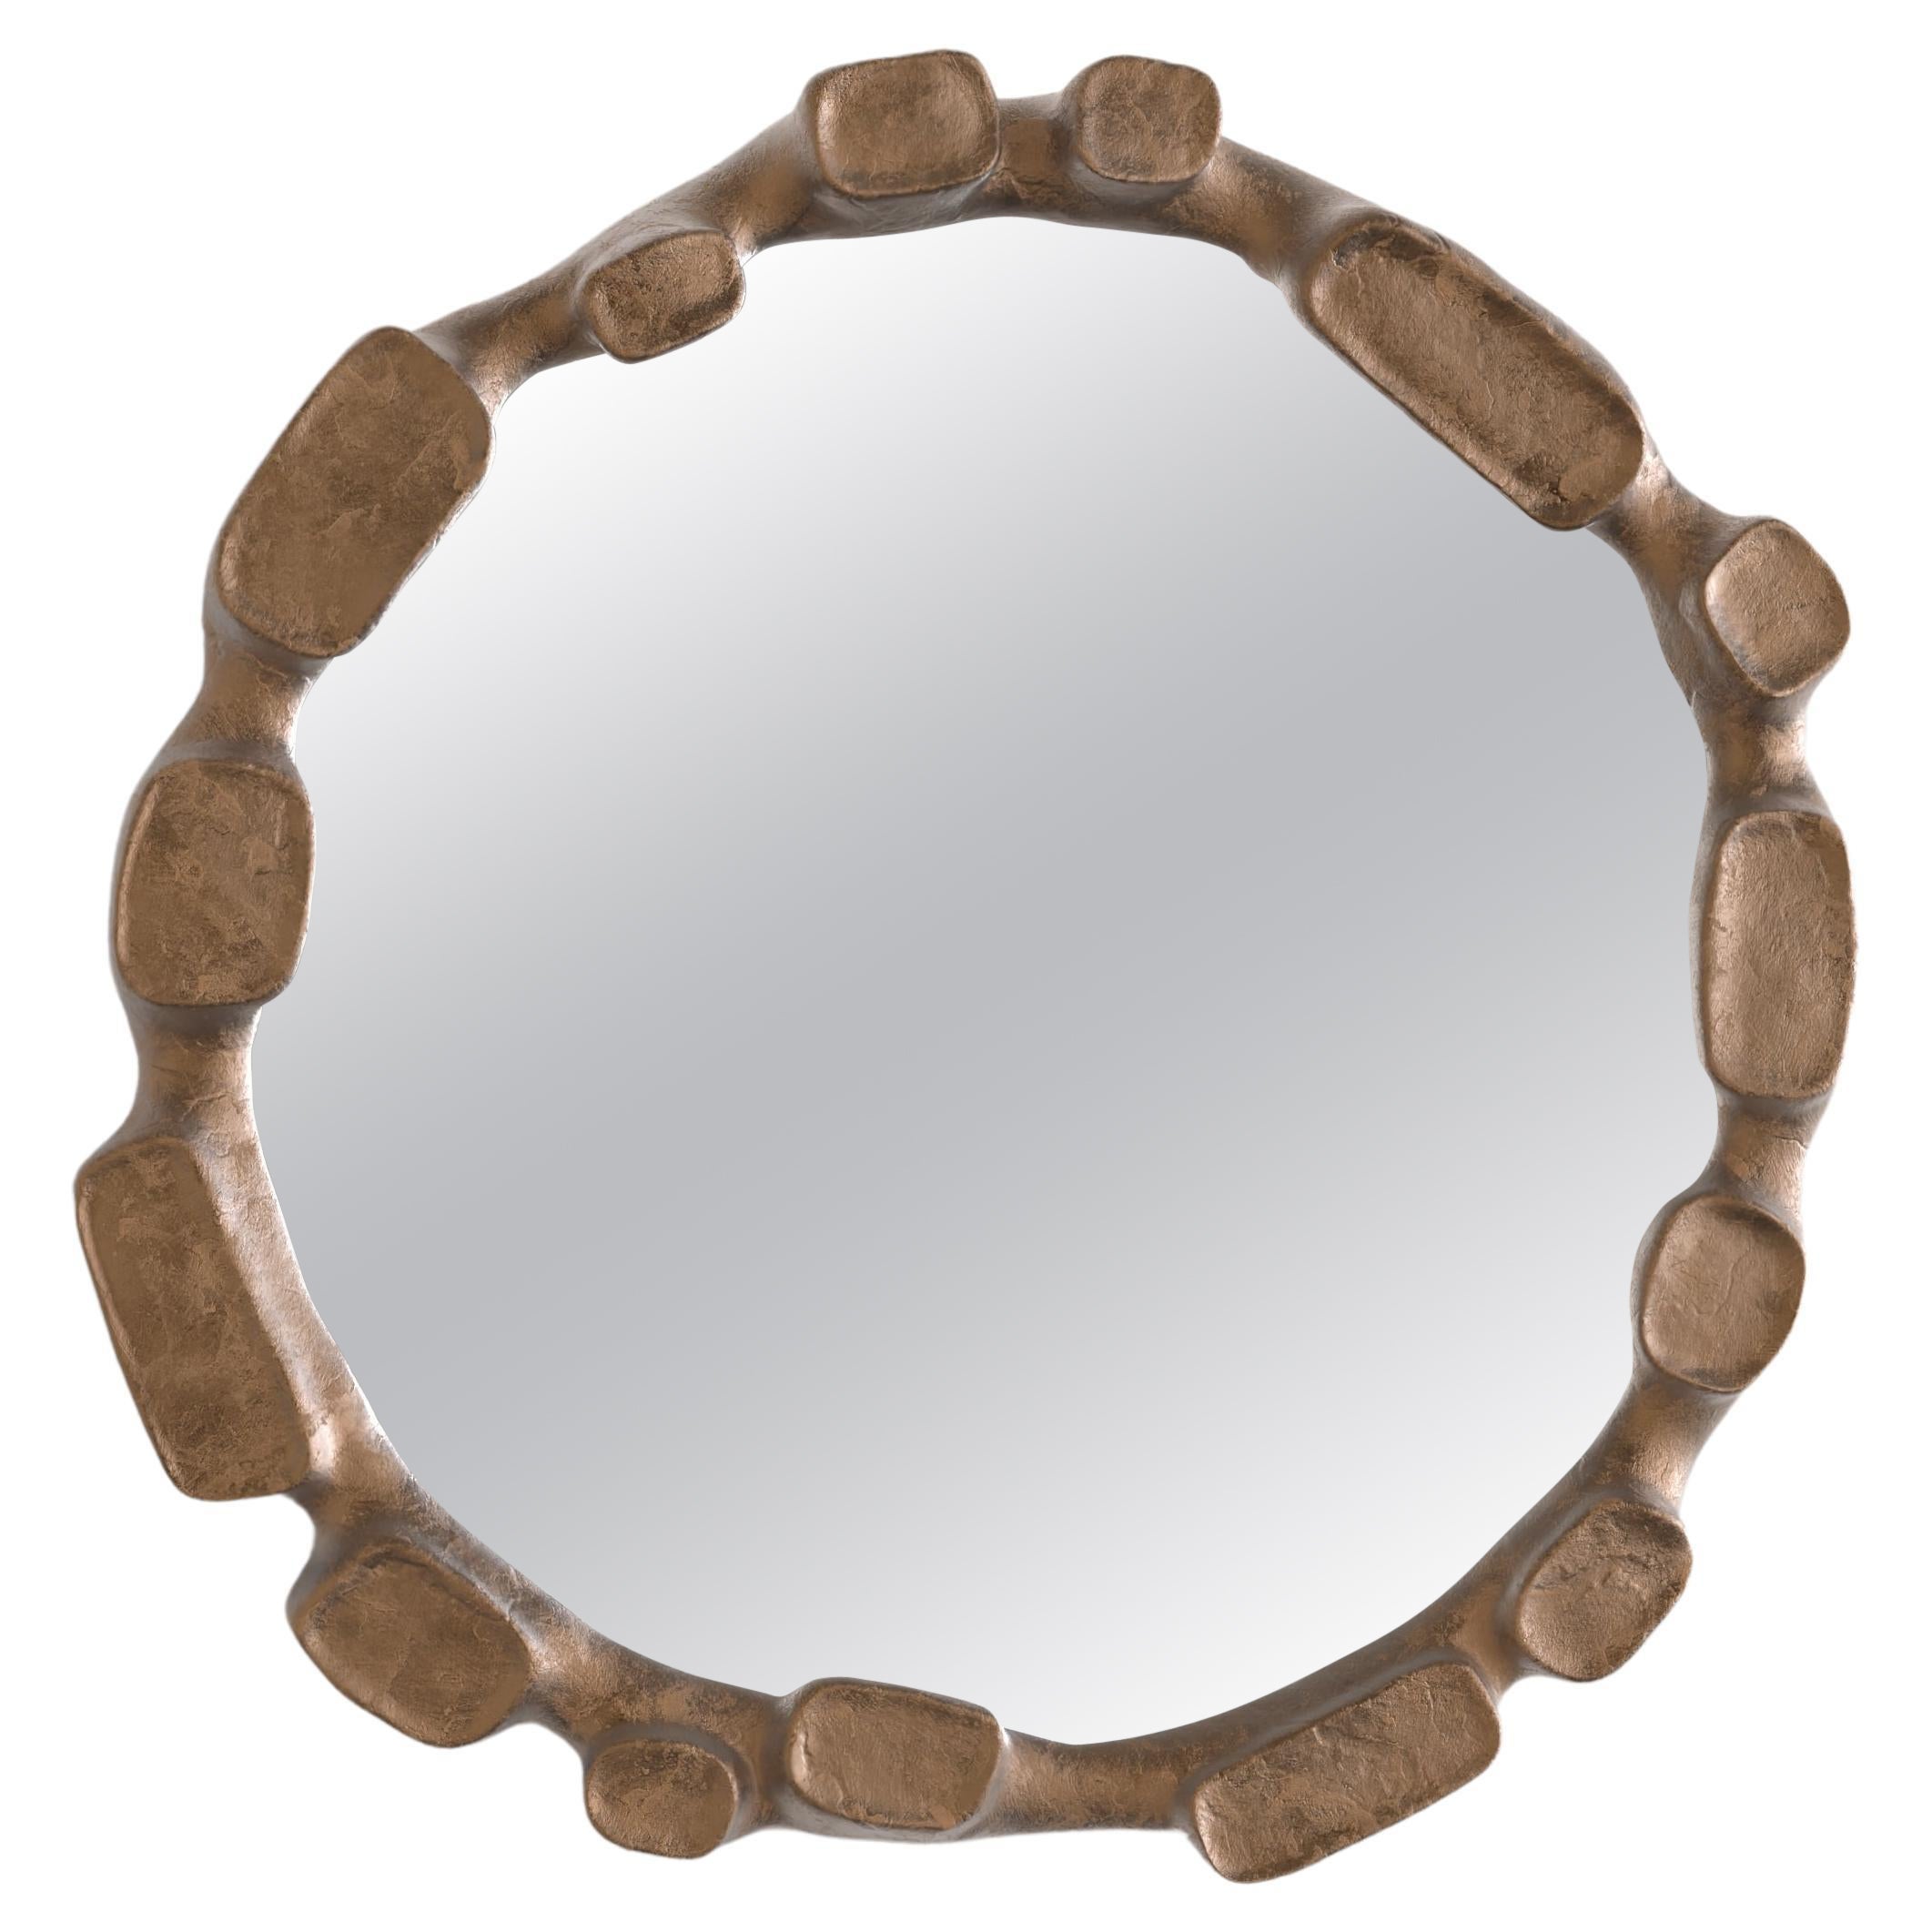 Mare V1 Wall Mirror by Edizione Limitata